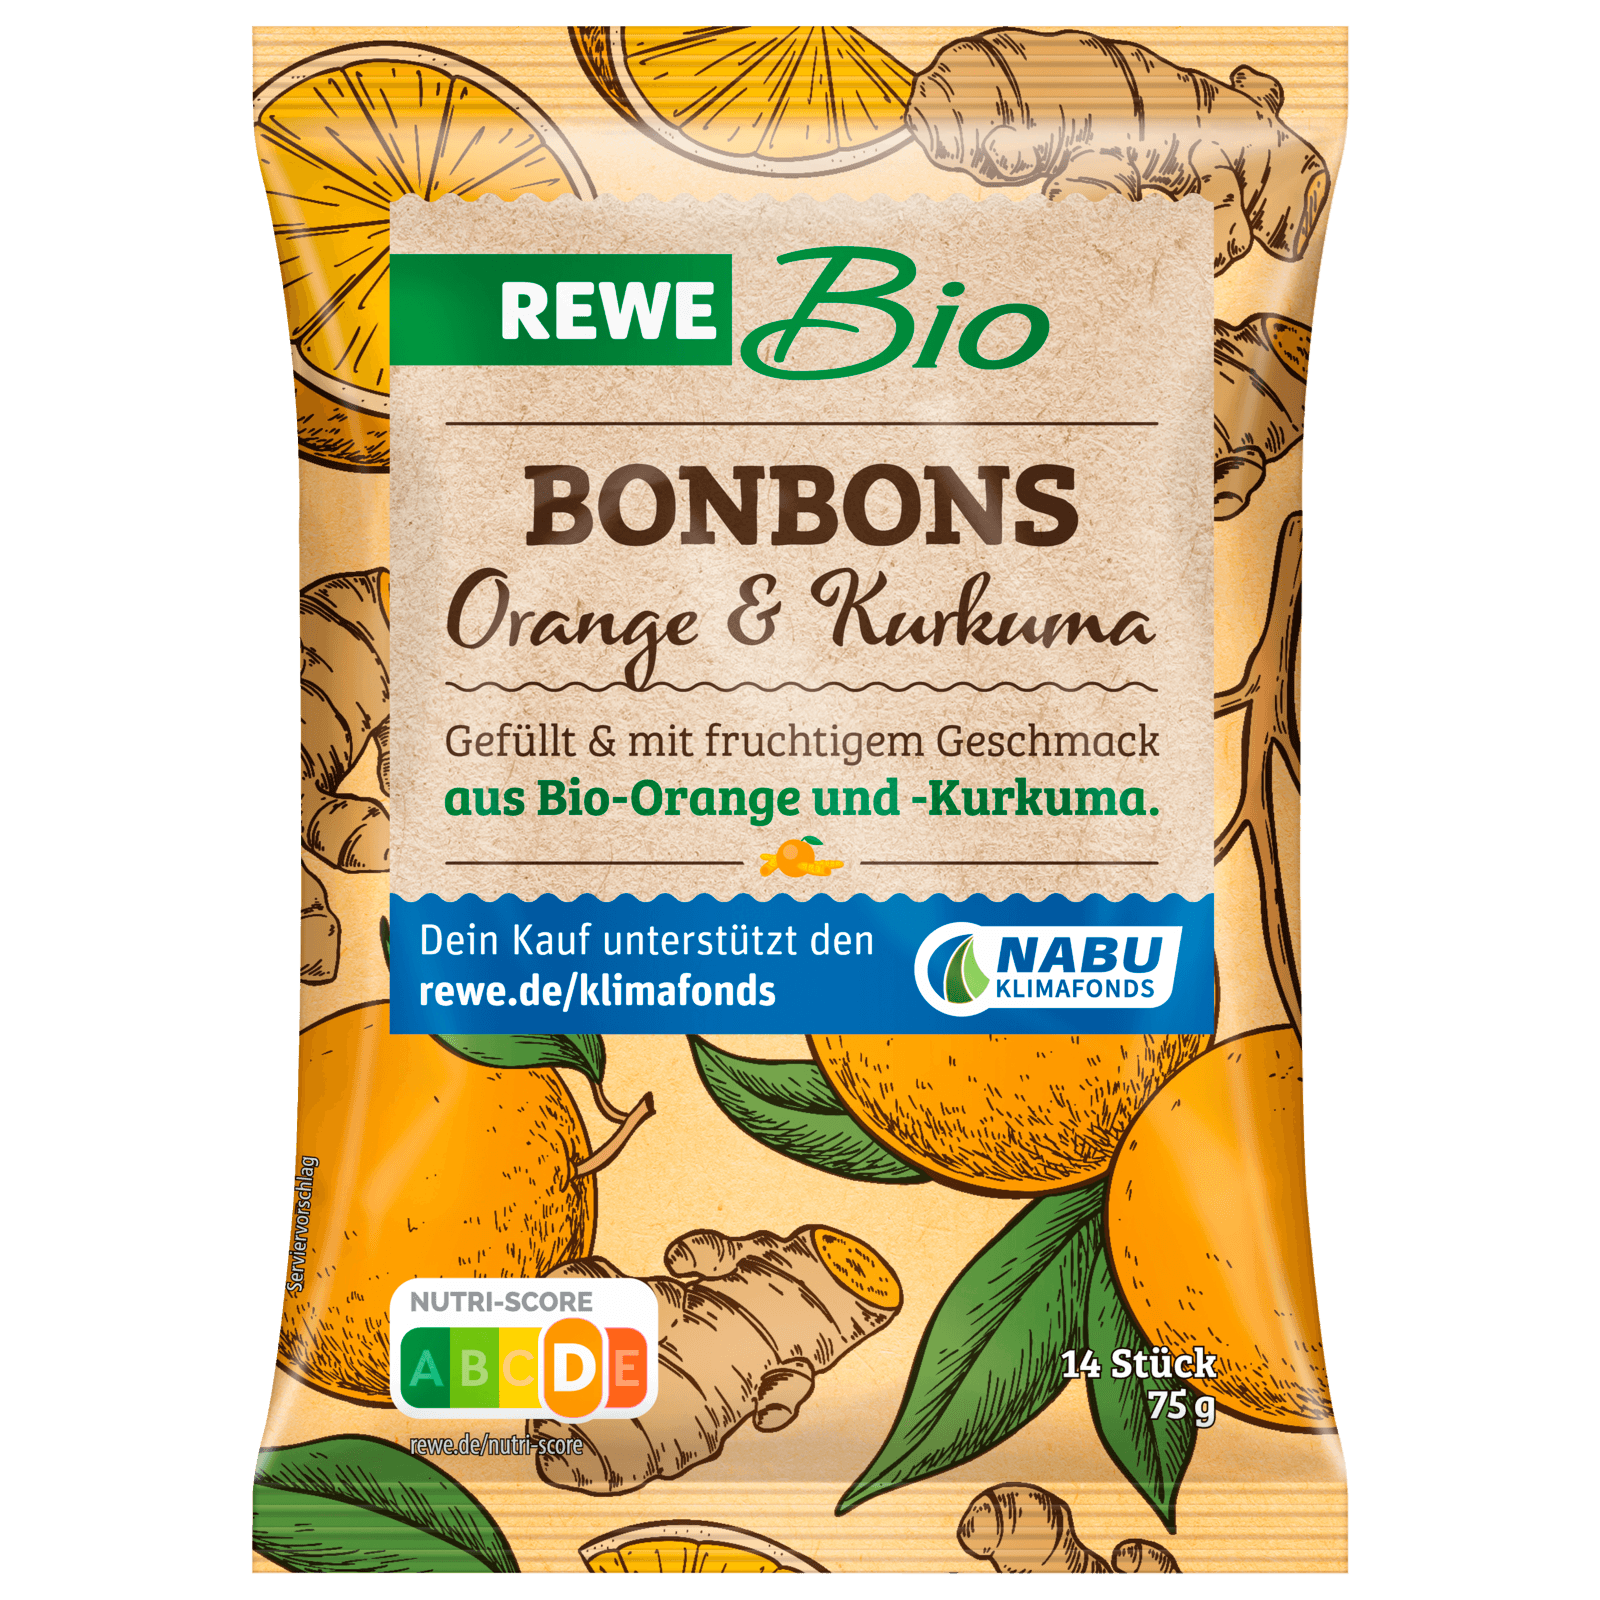 REWE Bio Bonbons Orange & Kurkuma 75g